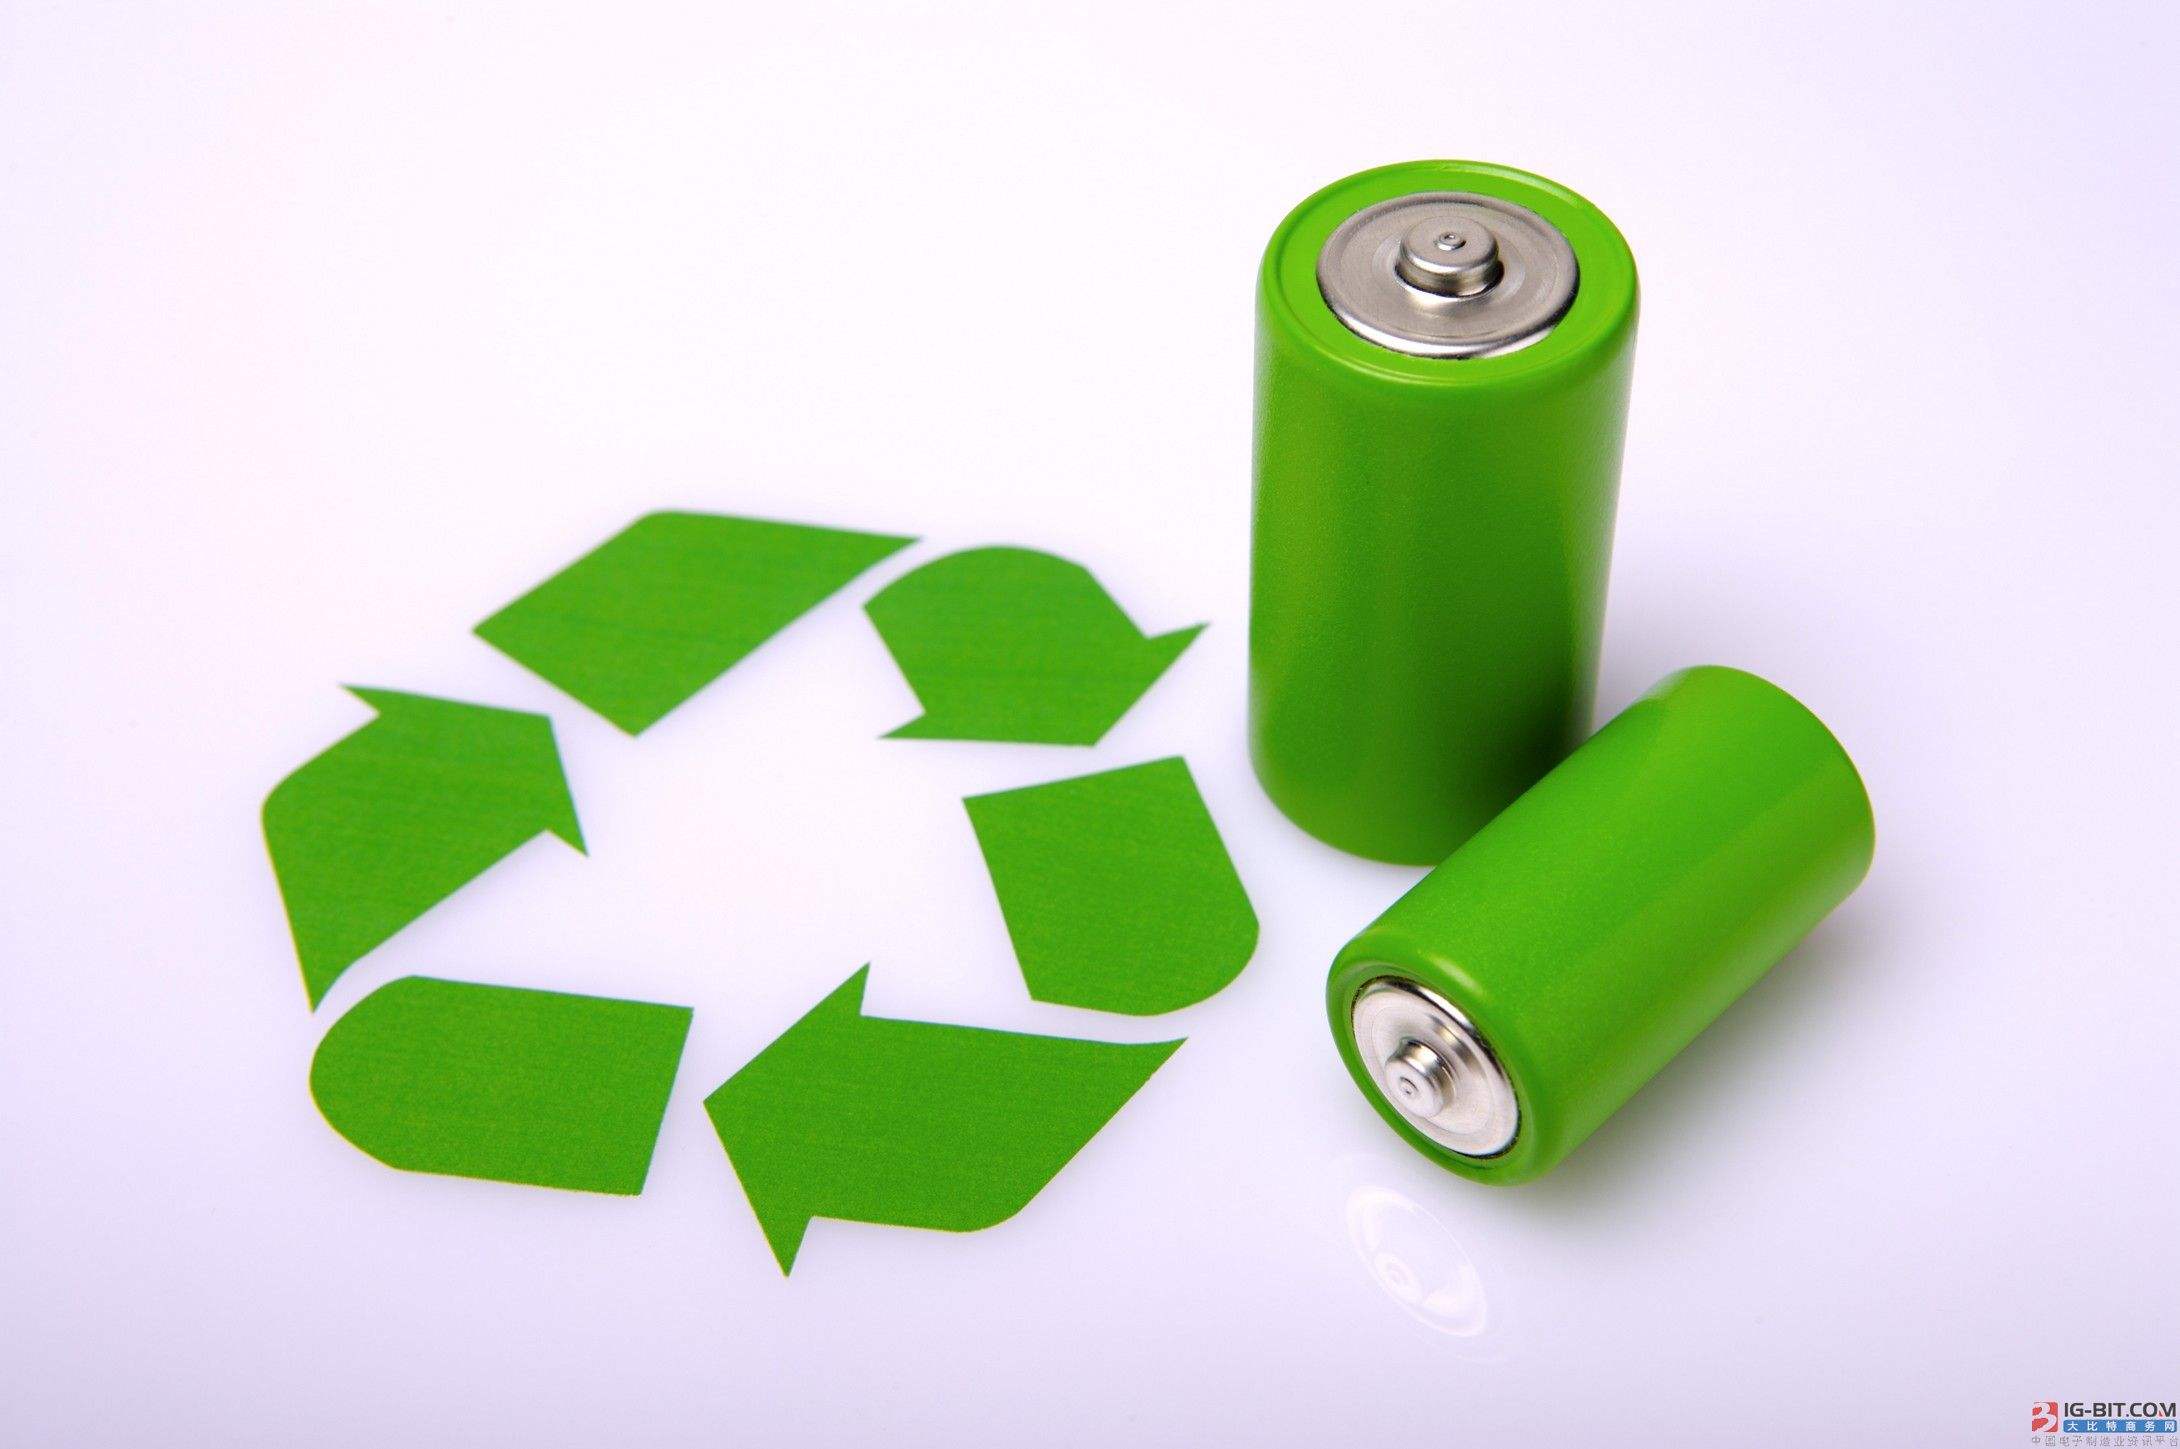 動力電池回收提速在即 產業鏈龍頭有望受益